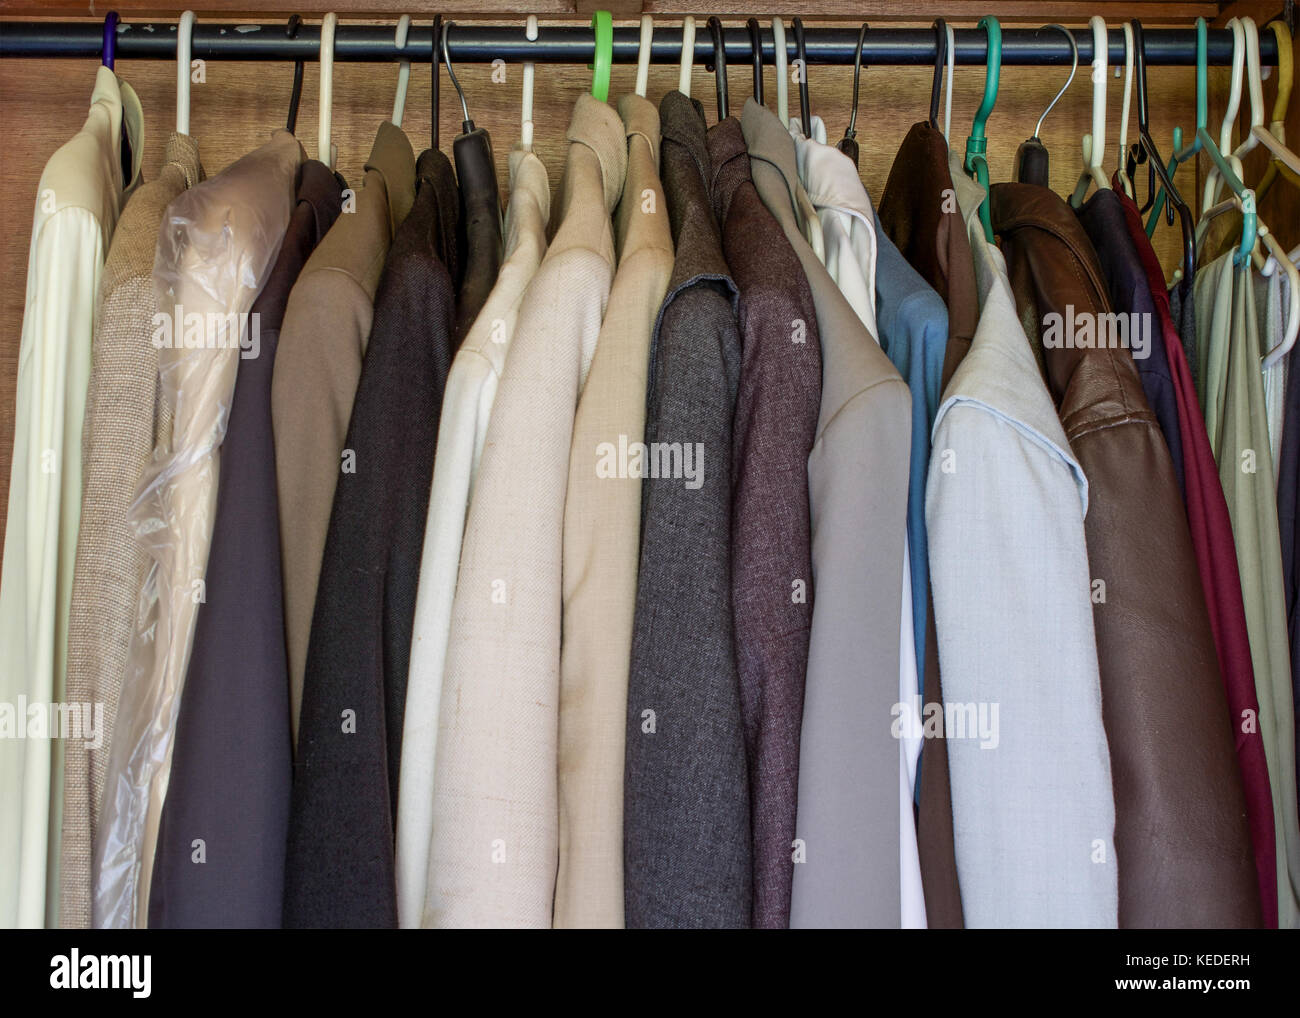 Mens Kleidung in einem Schrank in der Nähe zusammen hängen, Kleiderschrank  voll ist Stockfotografie - Alamy